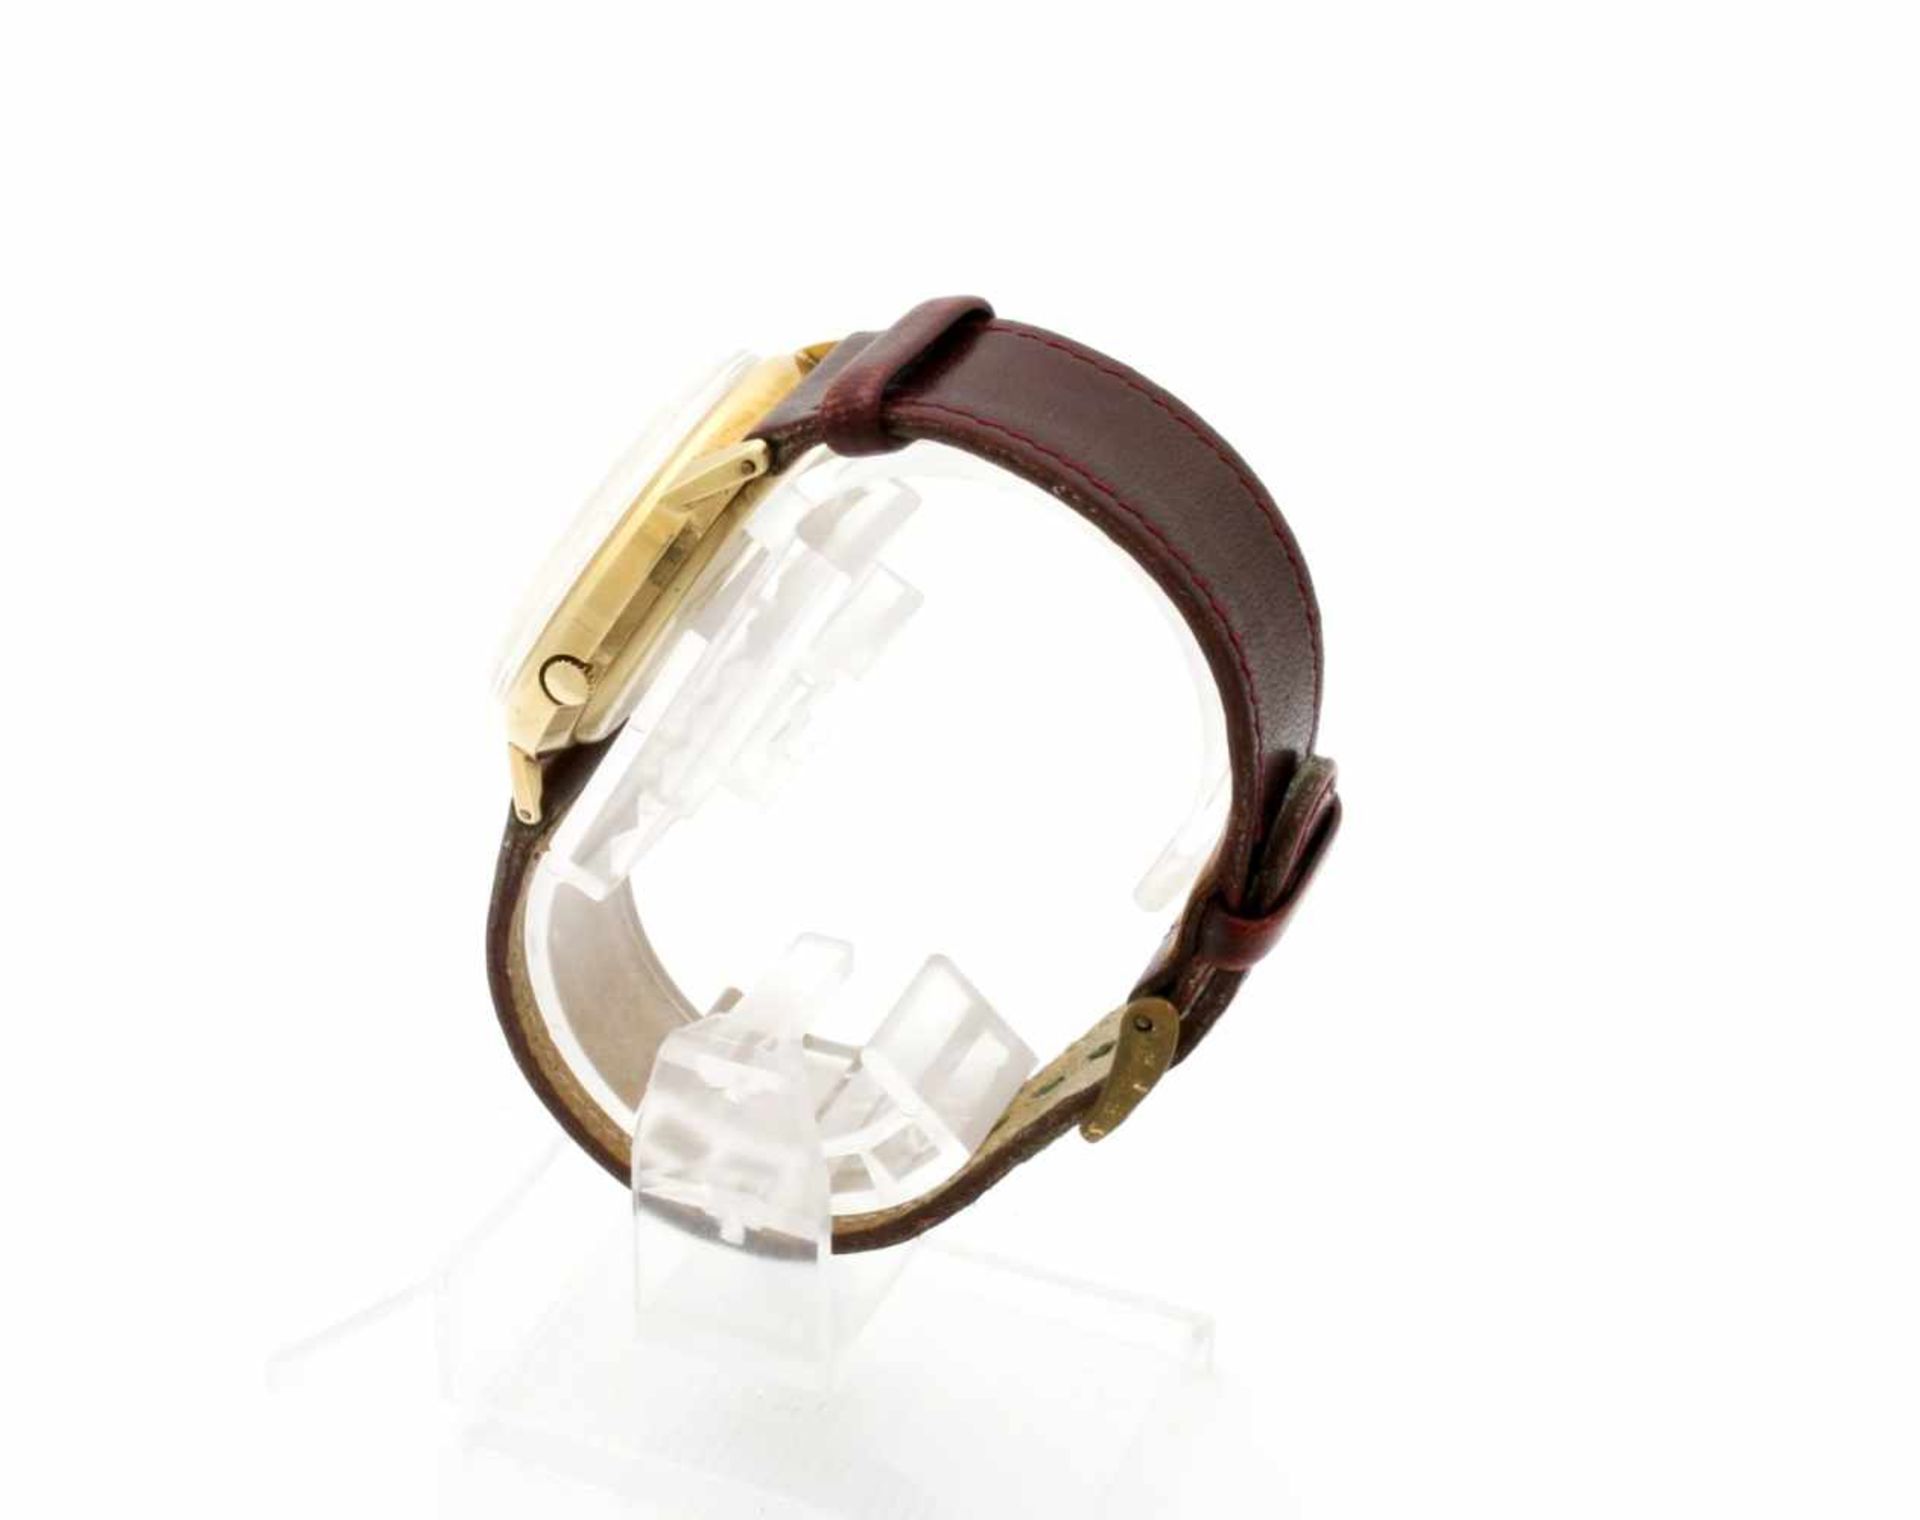 Goldene Armbanduhr Junghans 70er Jahre Quarzwerk, Ref. 667.01, Gehäuse GG 585, rückseitig Widmung, Ø - Bild 4 aus 4